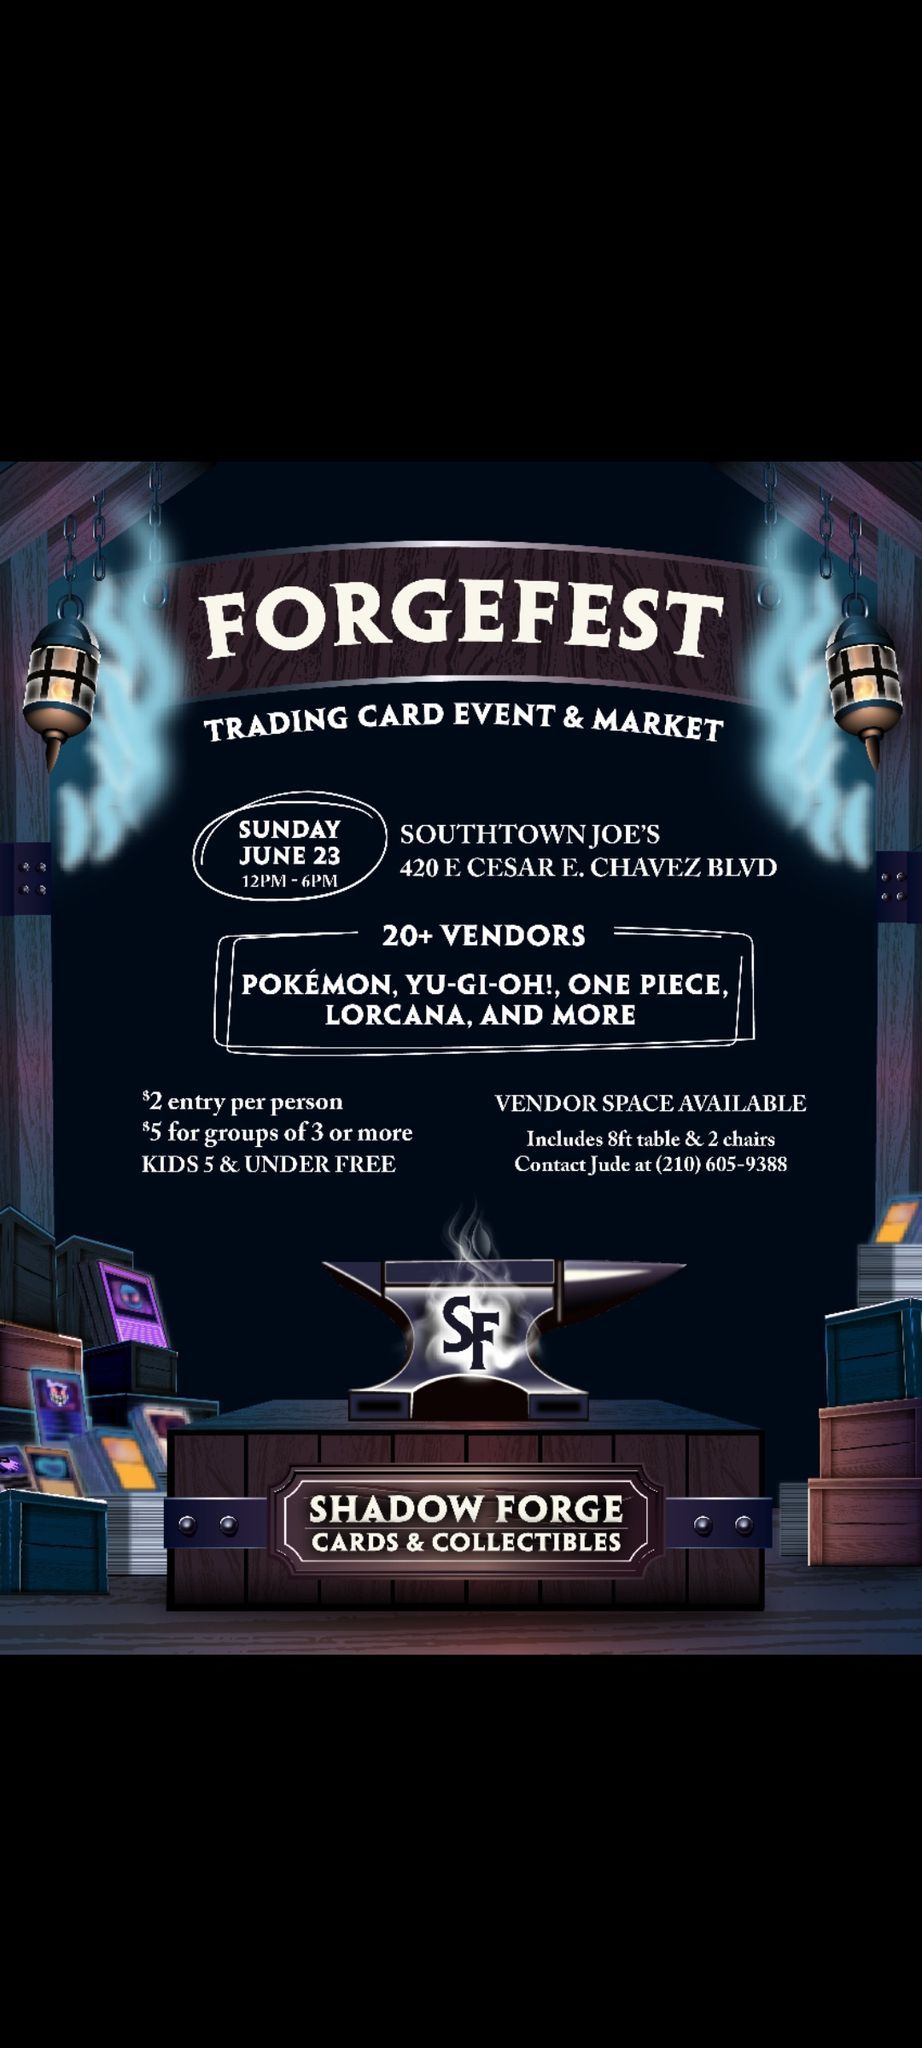 ForgeFest- Trading Card Event & Market